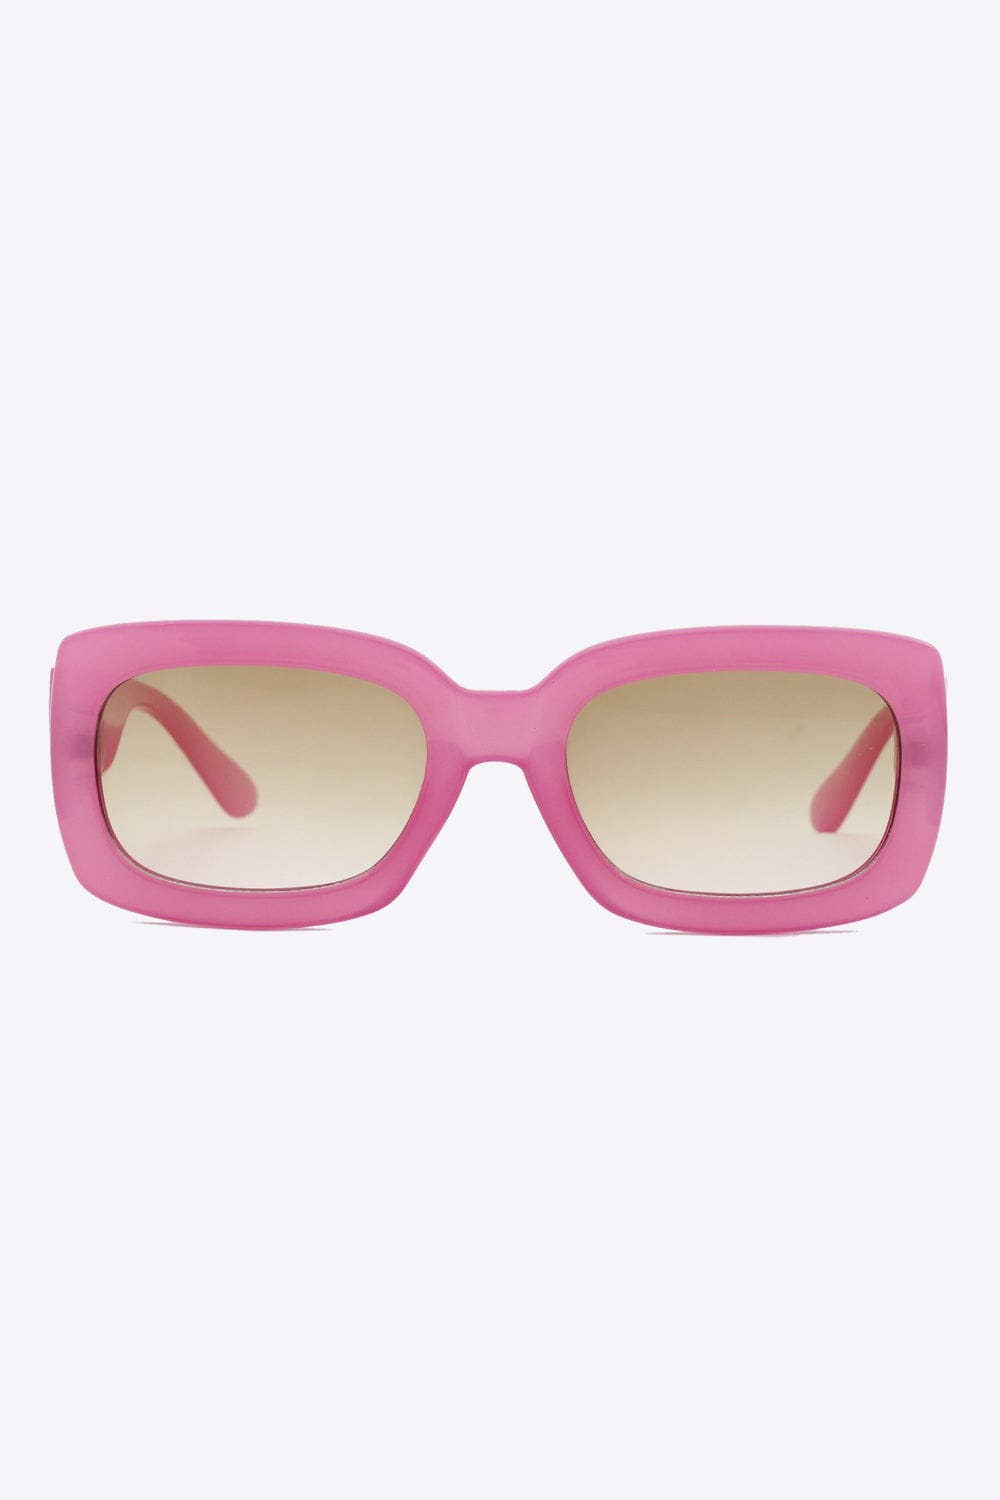 Polycarbonate Frame Rectangle Sunglasses - Body By J'ne